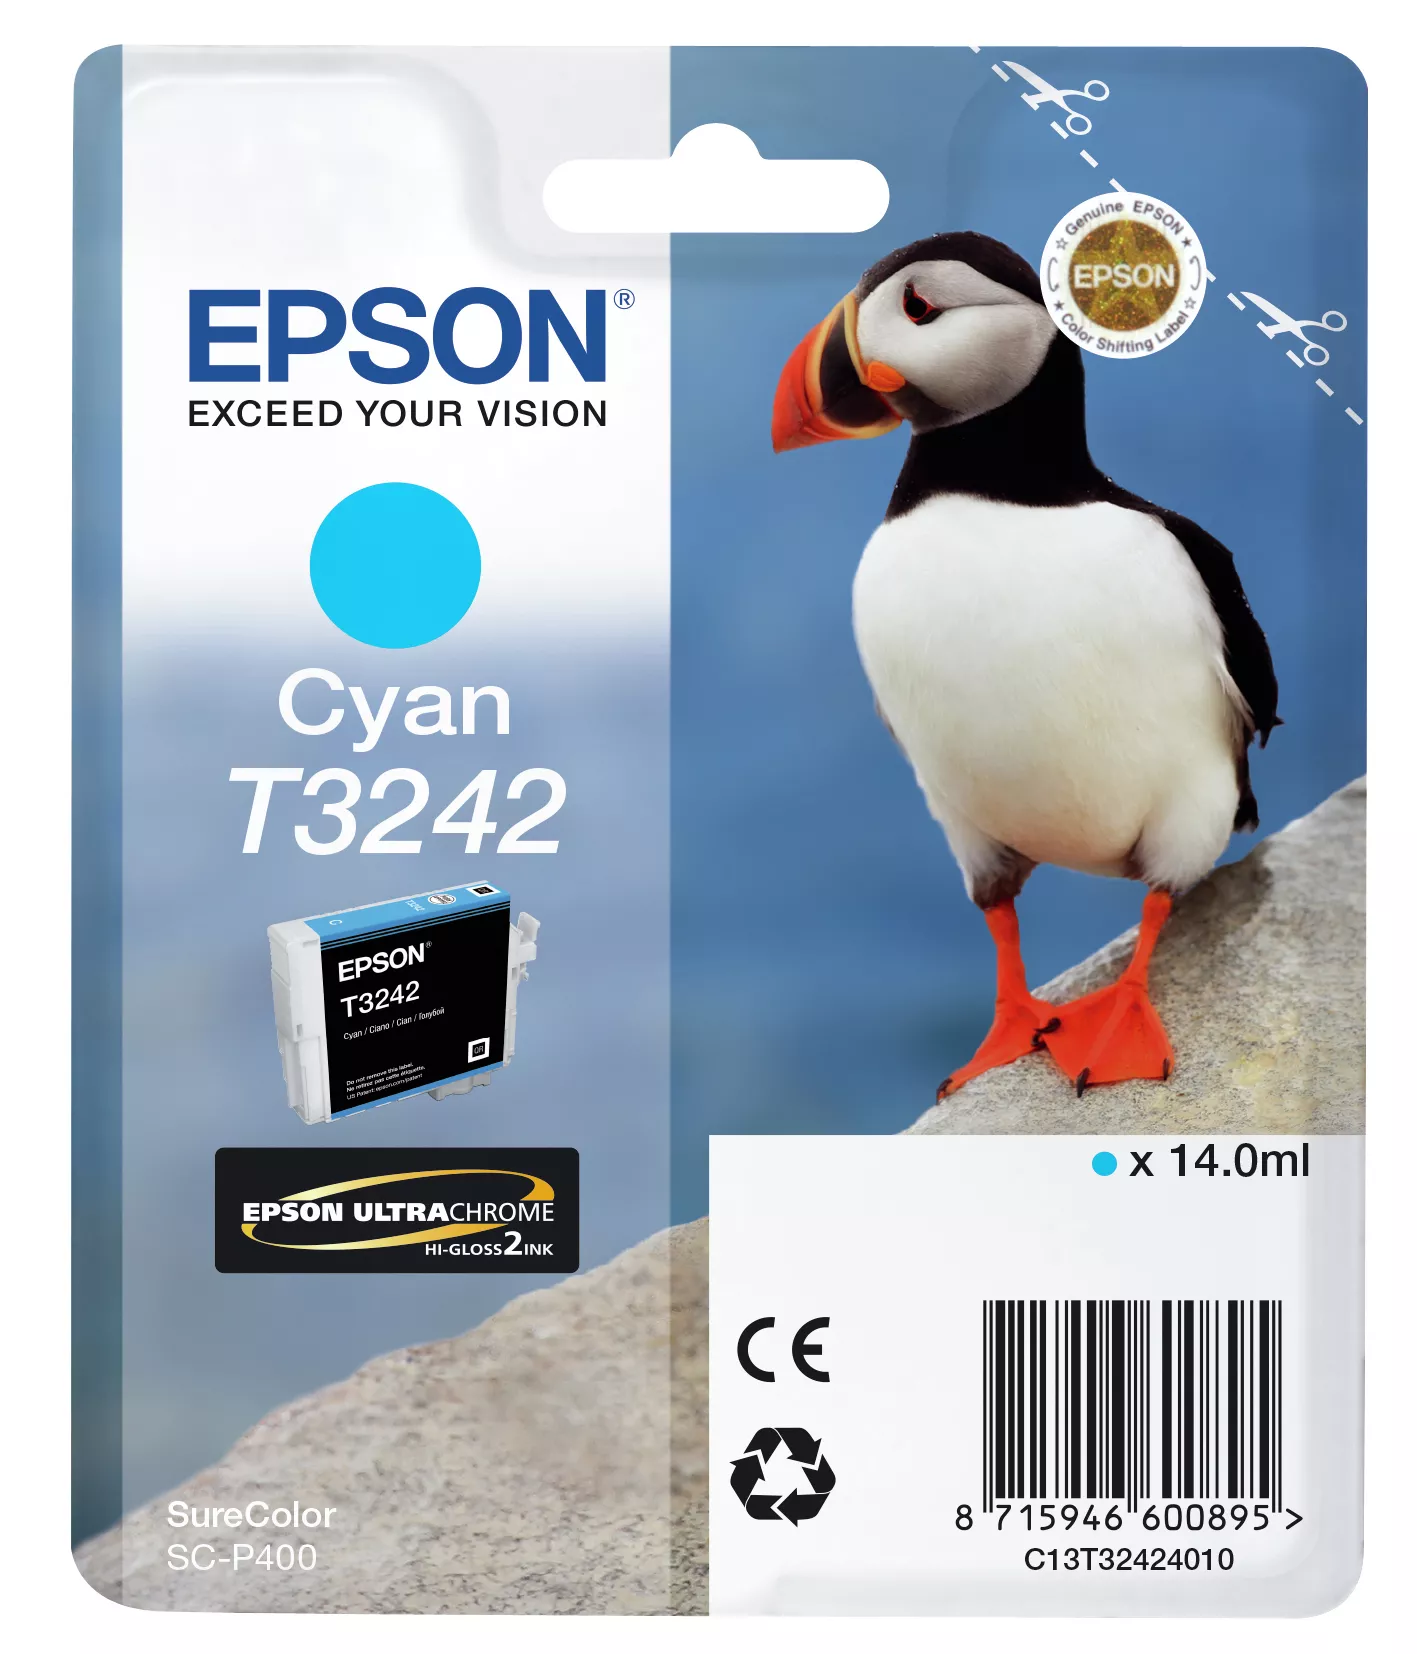 Achat EPSON Cartouche T3242 - Cyan 980 pages au meilleur prix